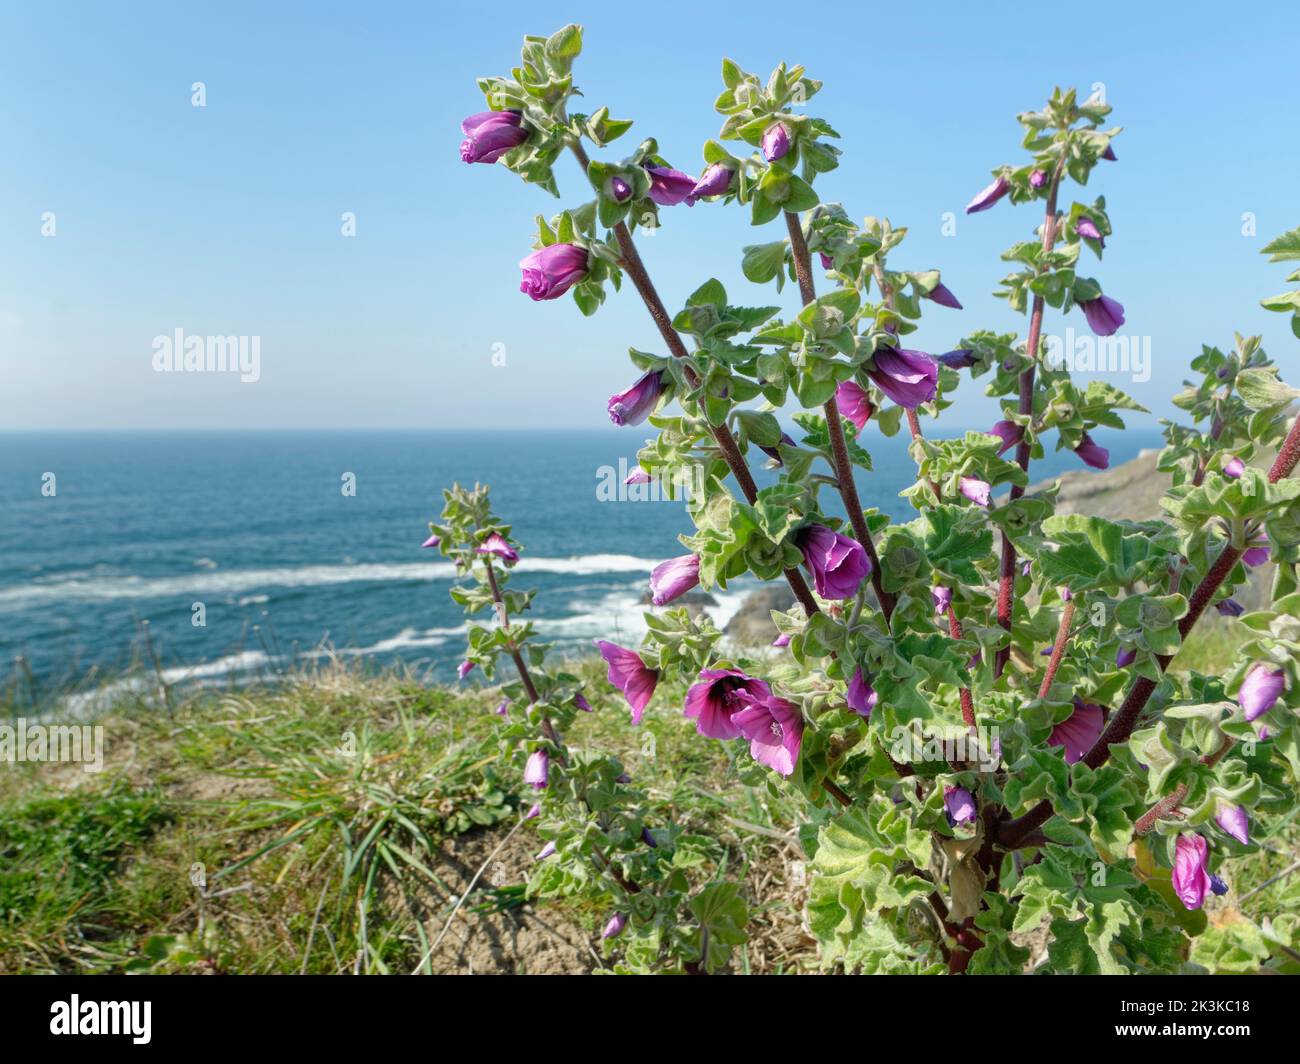 La plante des arbres (Malva arborea = Lavatera marítima) fleurit sur les prairies à sommet de falaise, Trevose Head, Cornwall, Royaume-Uni, avril. Banque D'Images